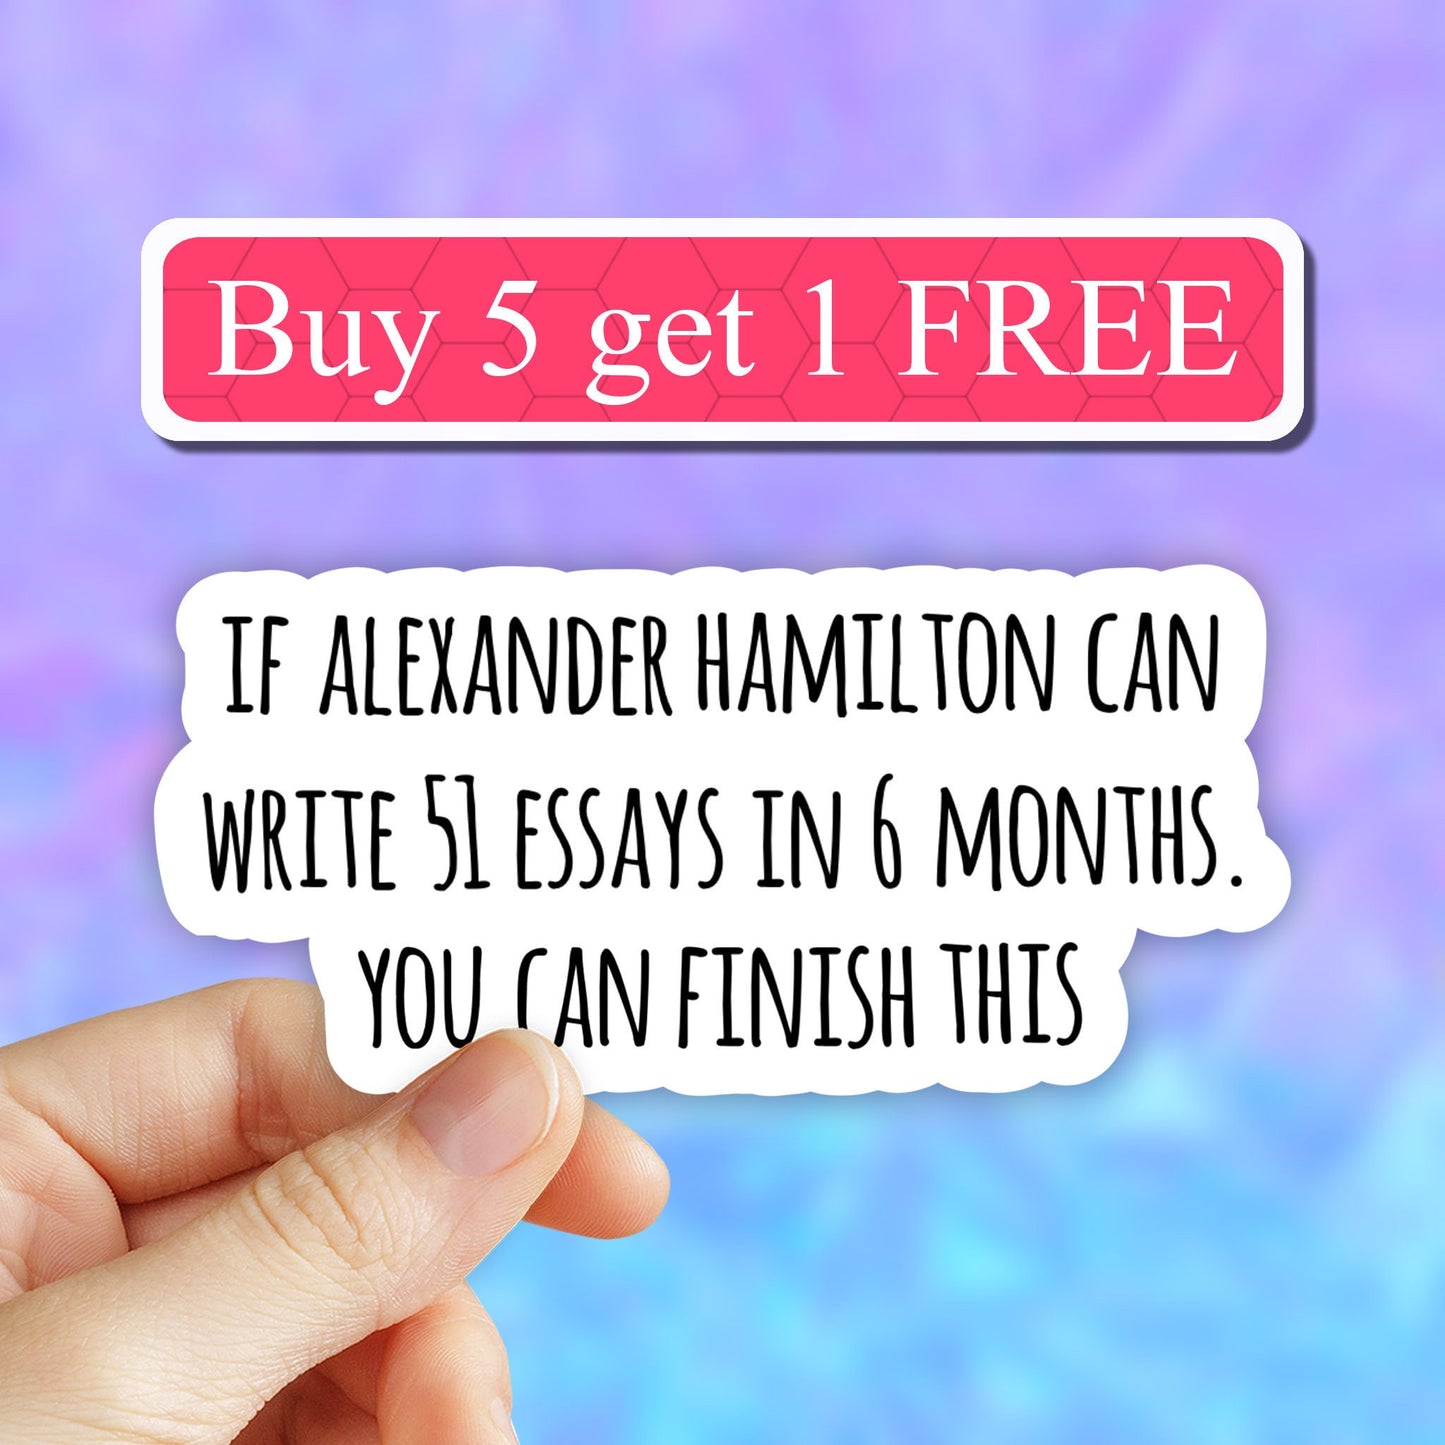 Alexander Hamilton history sticker, history stickers, essays sticker, laptop decals, tumbler stickers, water bottle sticker, saying sticker